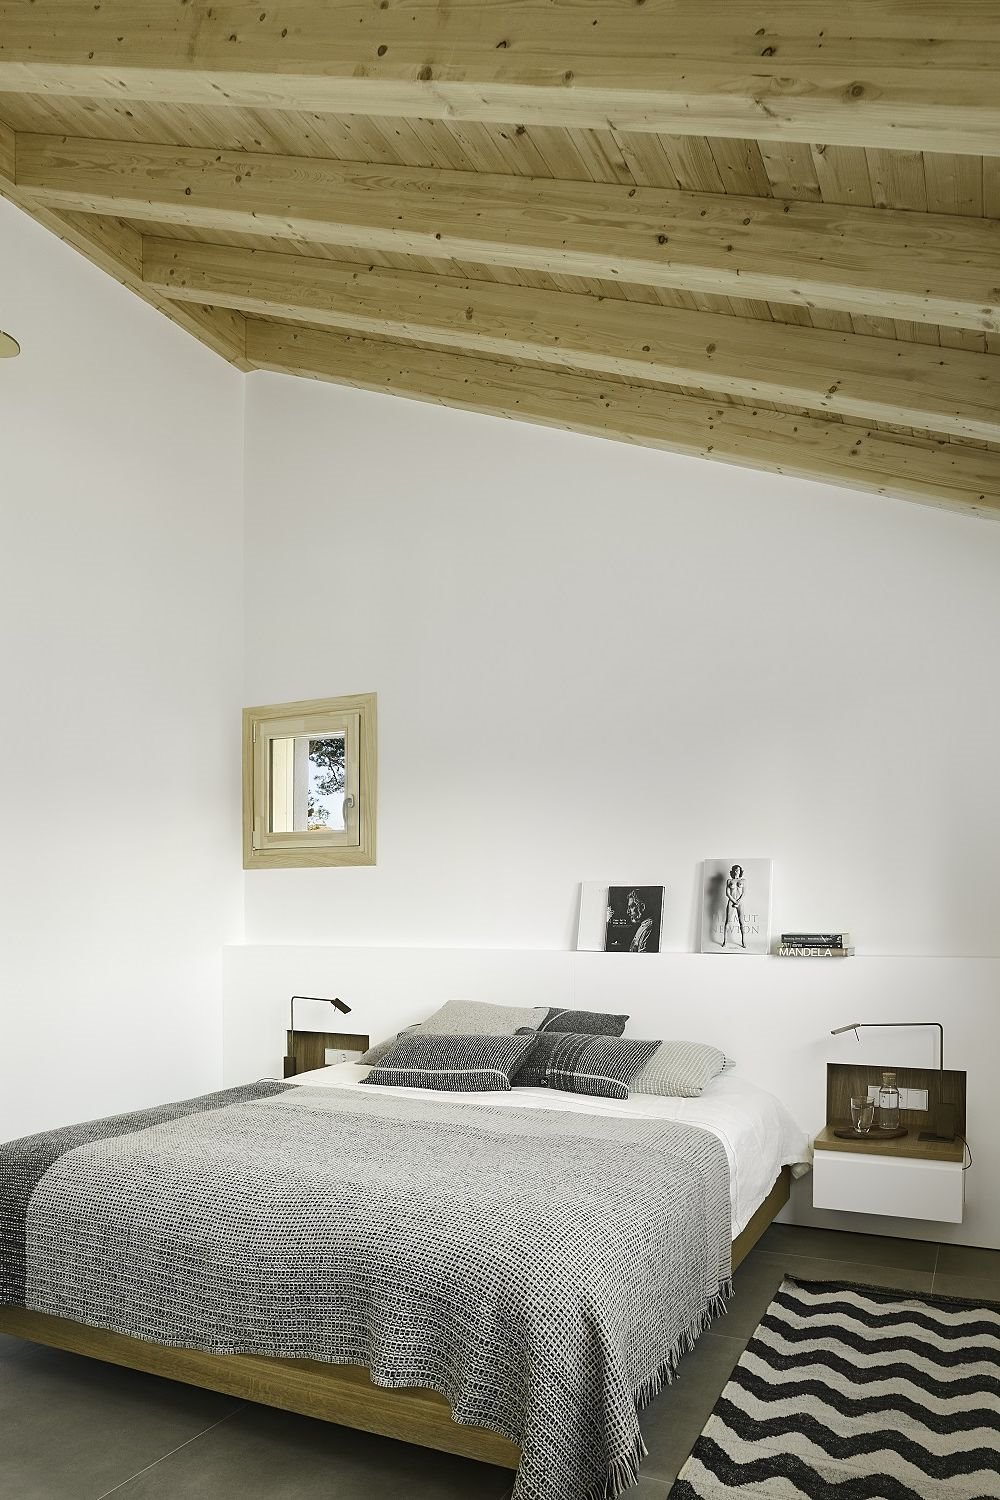 Un discreto cabecero cumplirá su función manteniendo el equilibrio y estilo natural del resto del dormitorio. Este, de DM lacado y madera, es obra de los arquitectos Alventosa Morell.